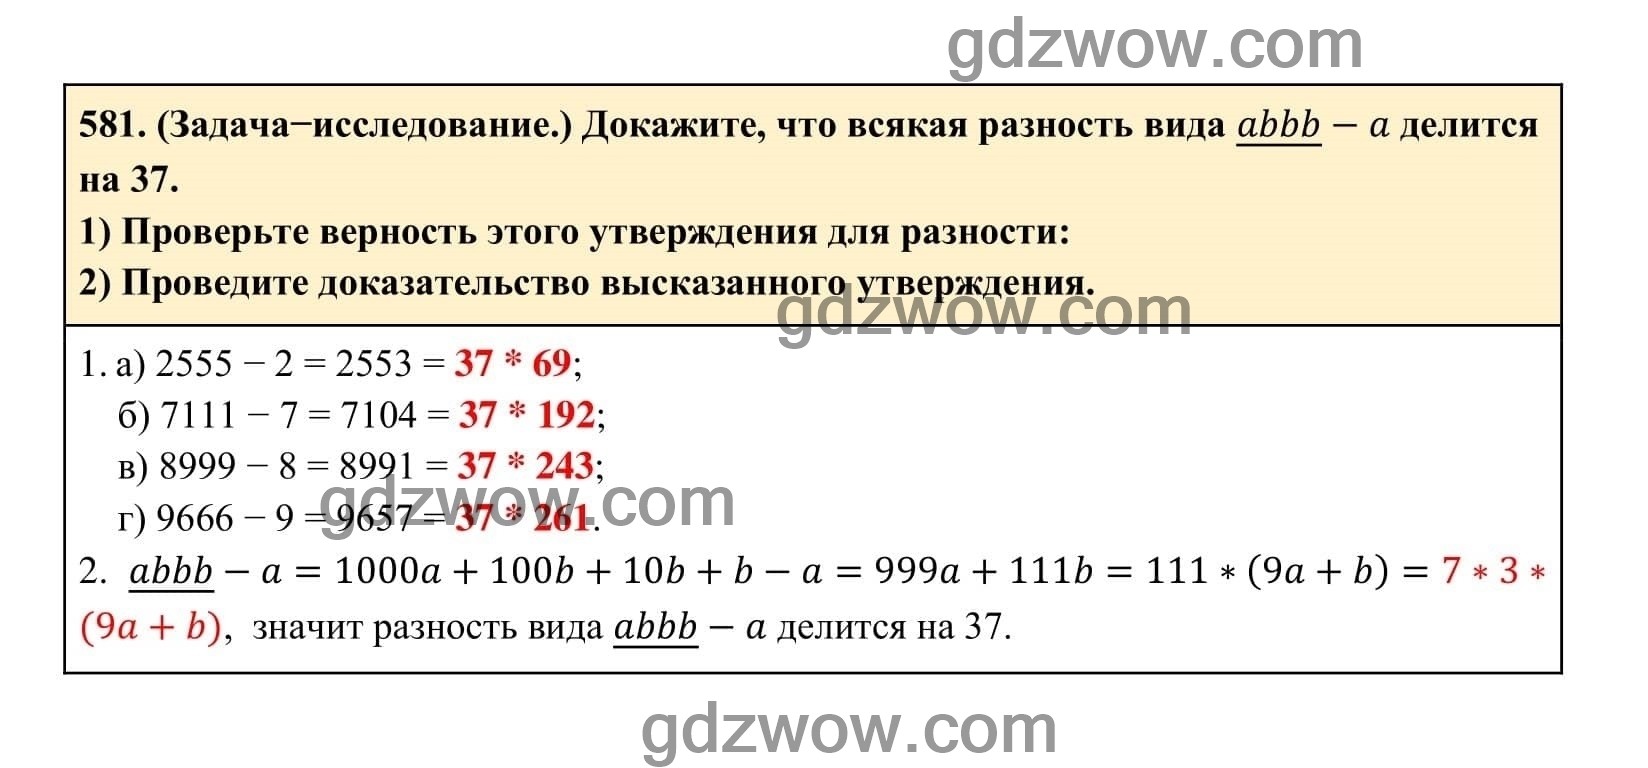 Упражнение 581 - ГДЗ по Алгебре 7 класс Учебник Макарычев (решебник) - GDZwow